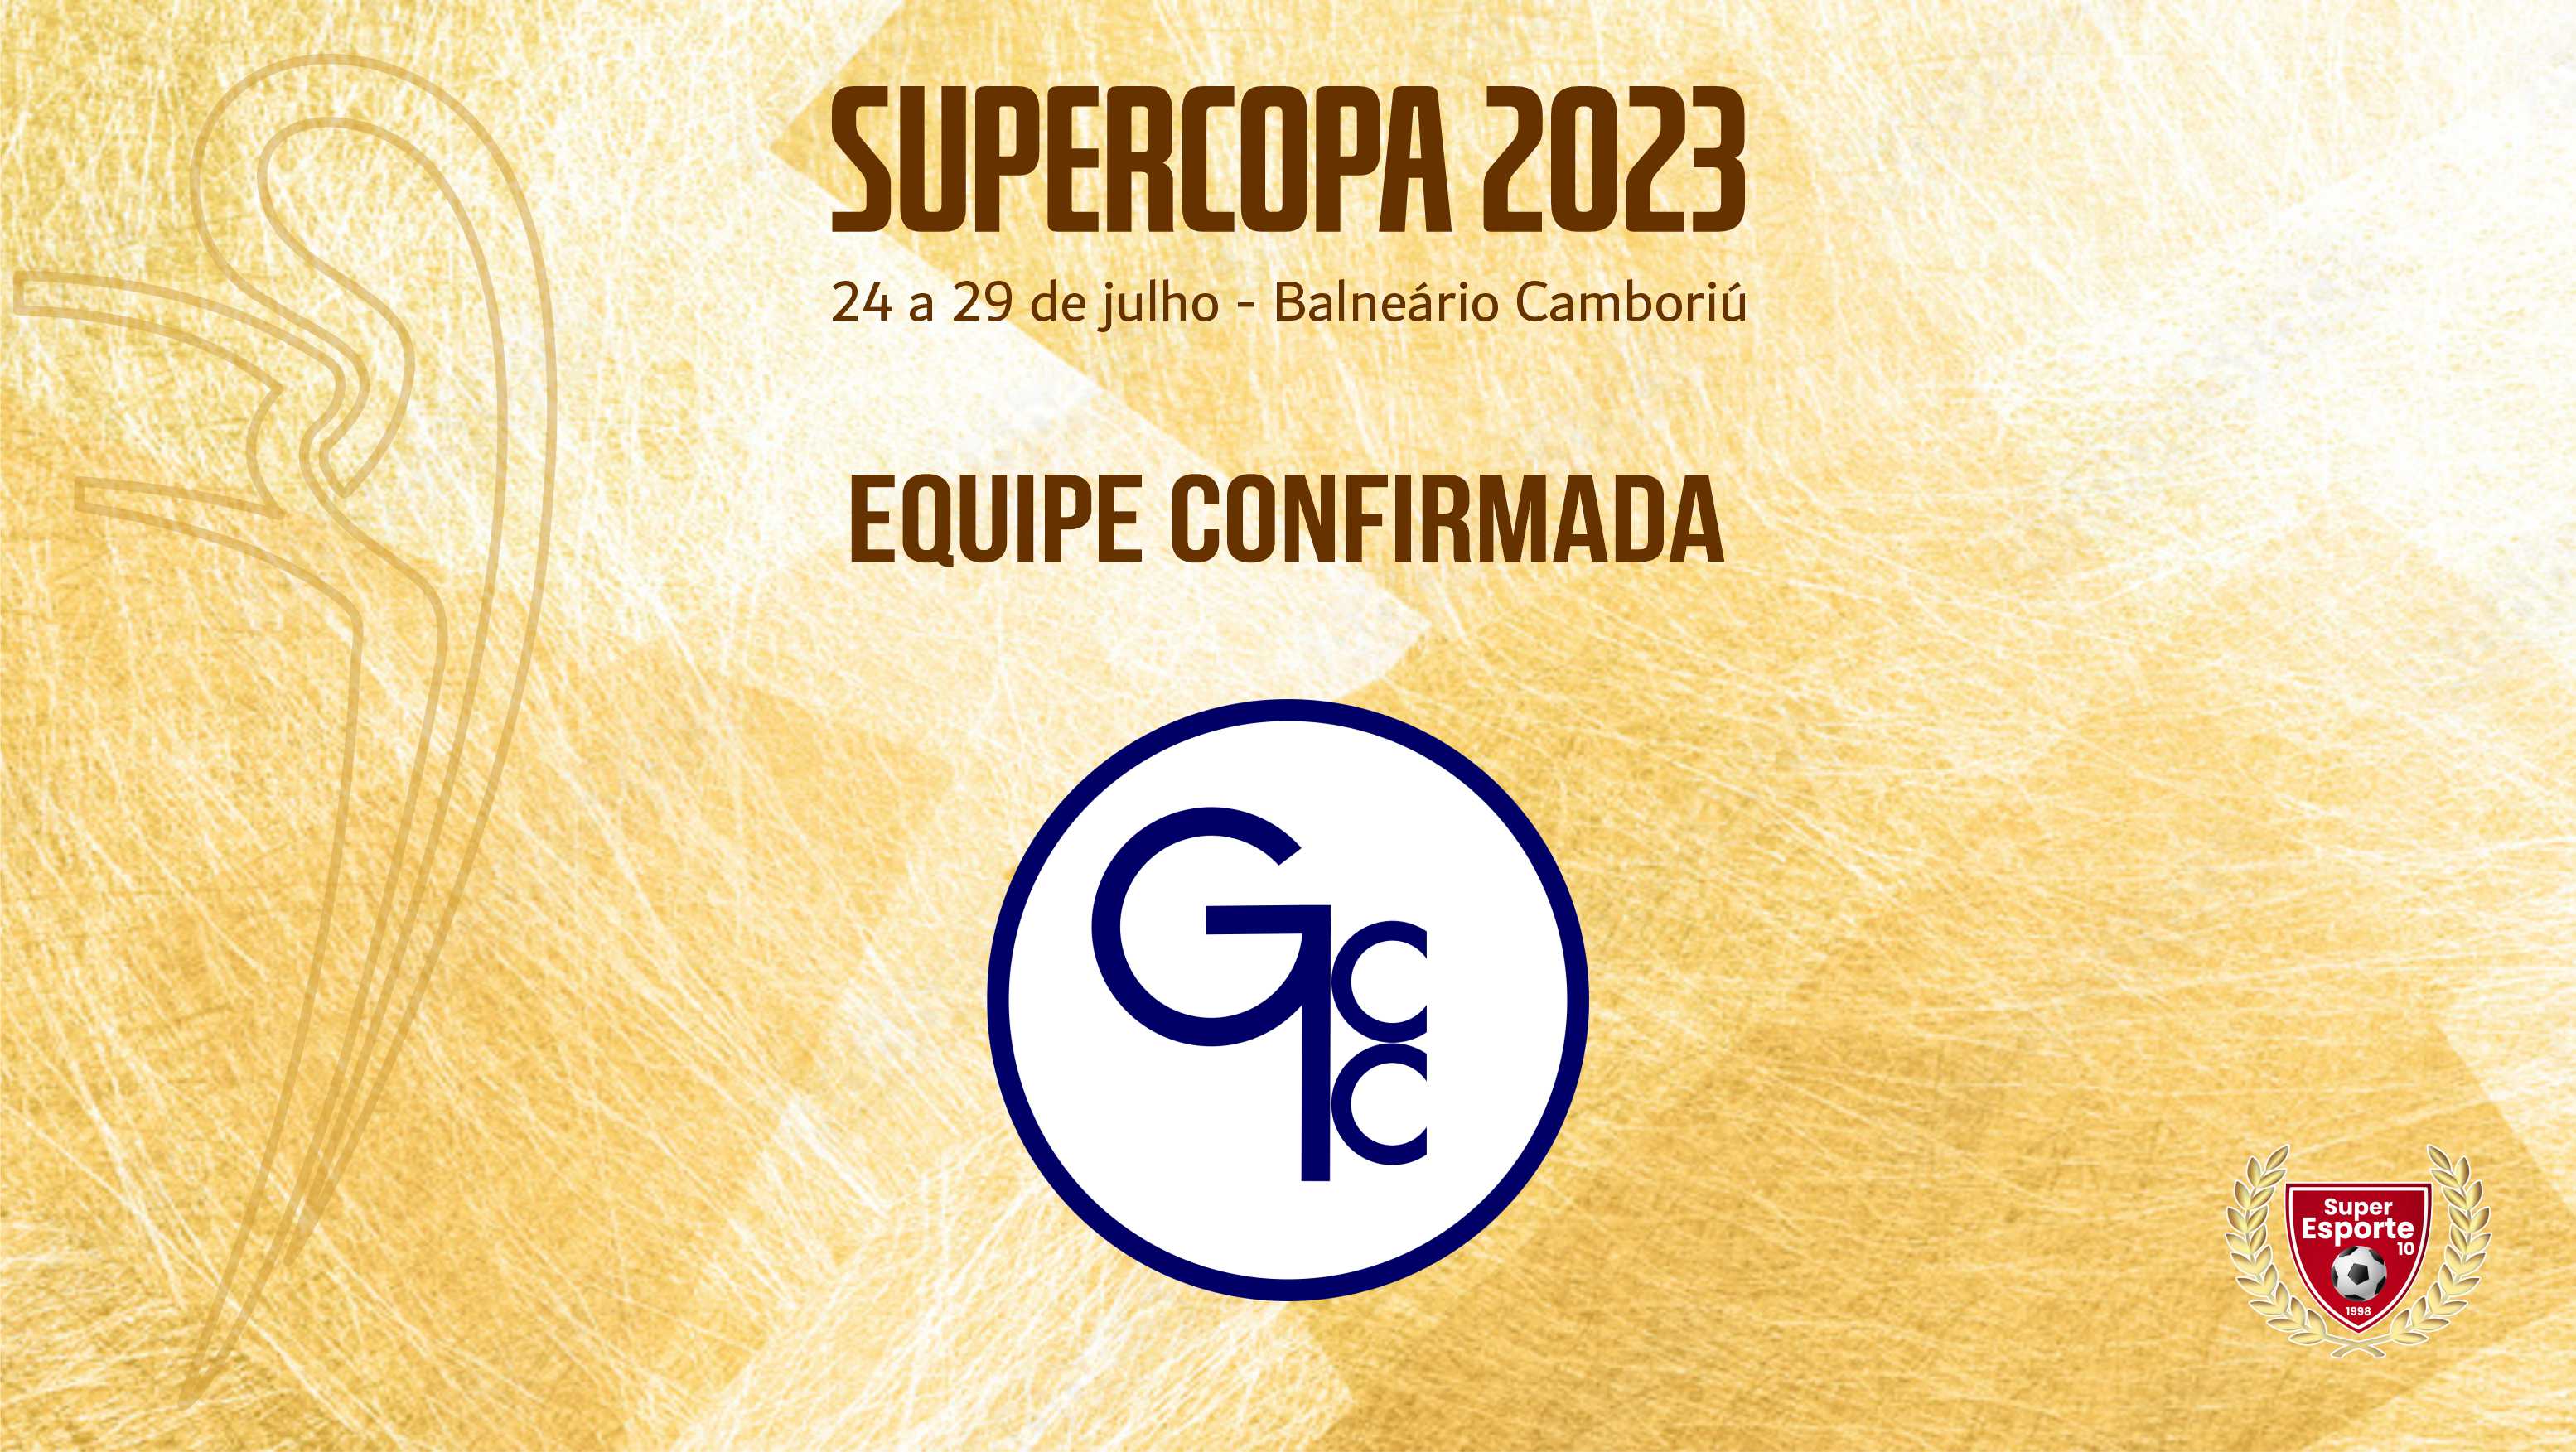 Grajaú Country Club vem do RJ para a Supercopa